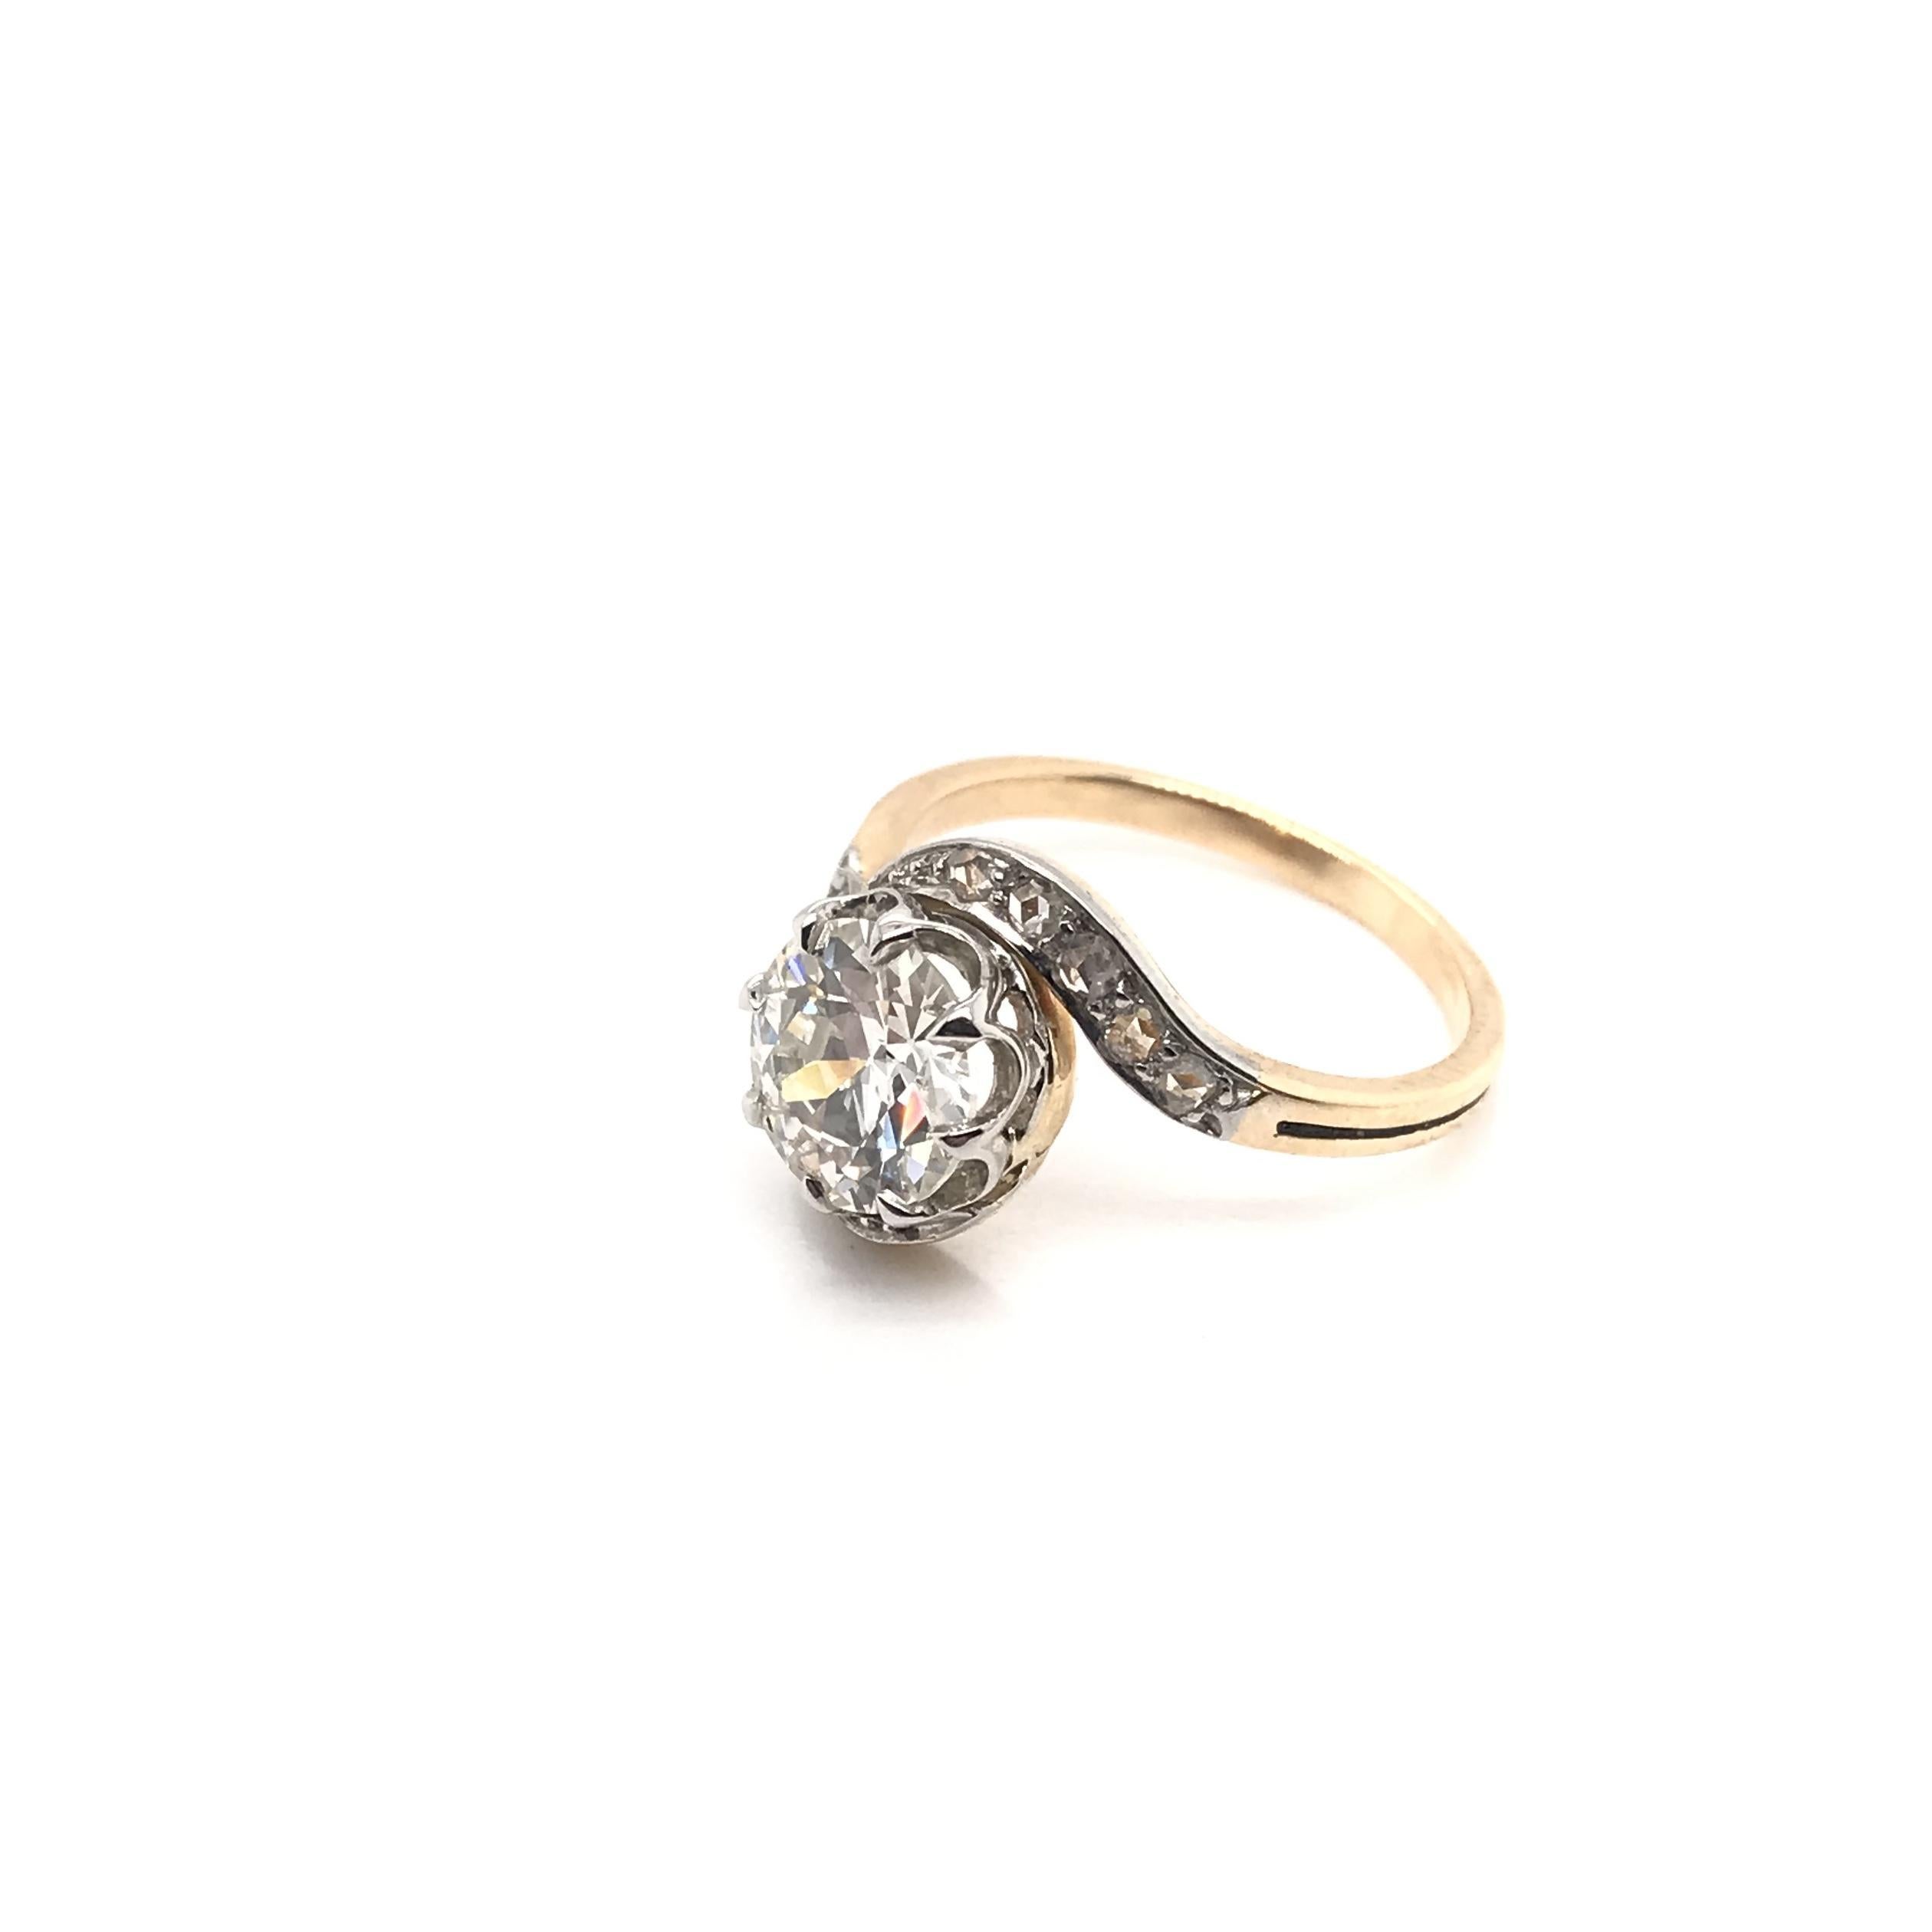 Antique Art Nouveau 1.66 Carat Diamond Ring For Sale 1